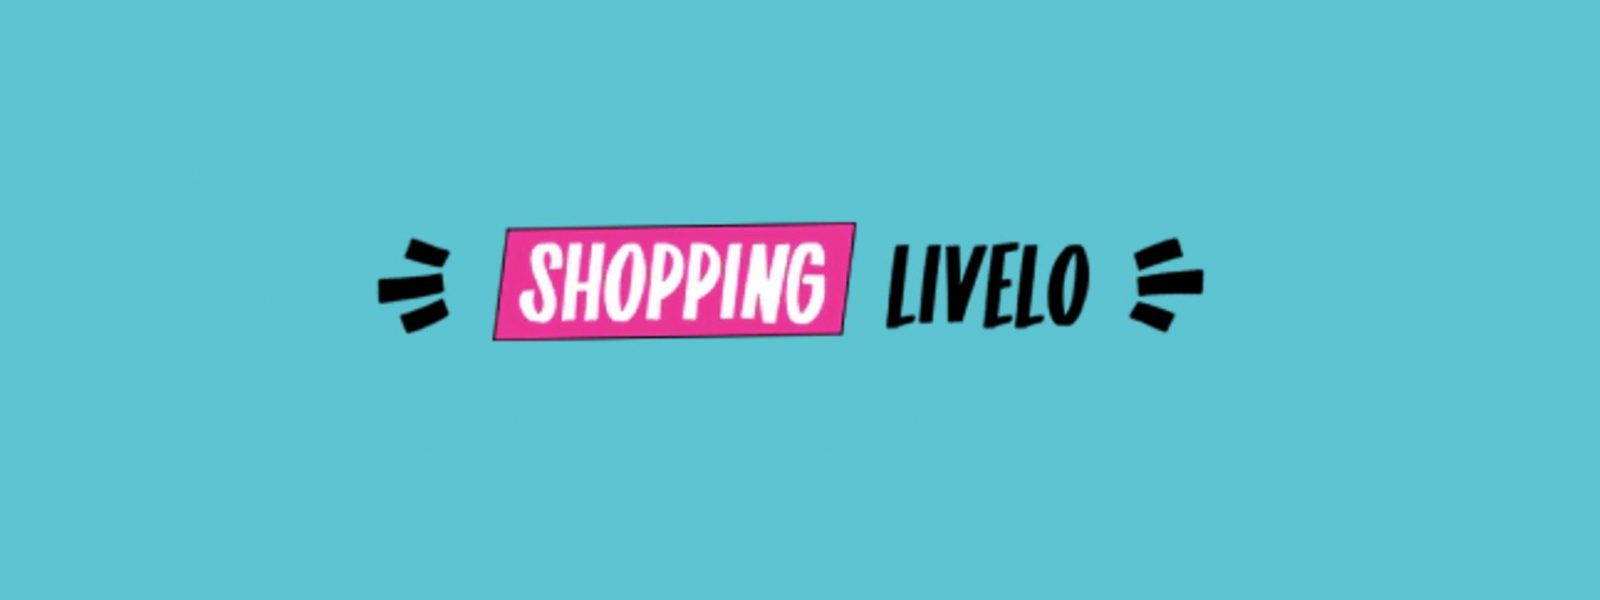 Shopping Livelo oferece até 8 pontos por real gasto em produtos da Decathlon, Casas Bahia, Extra e mais 8 parceiros